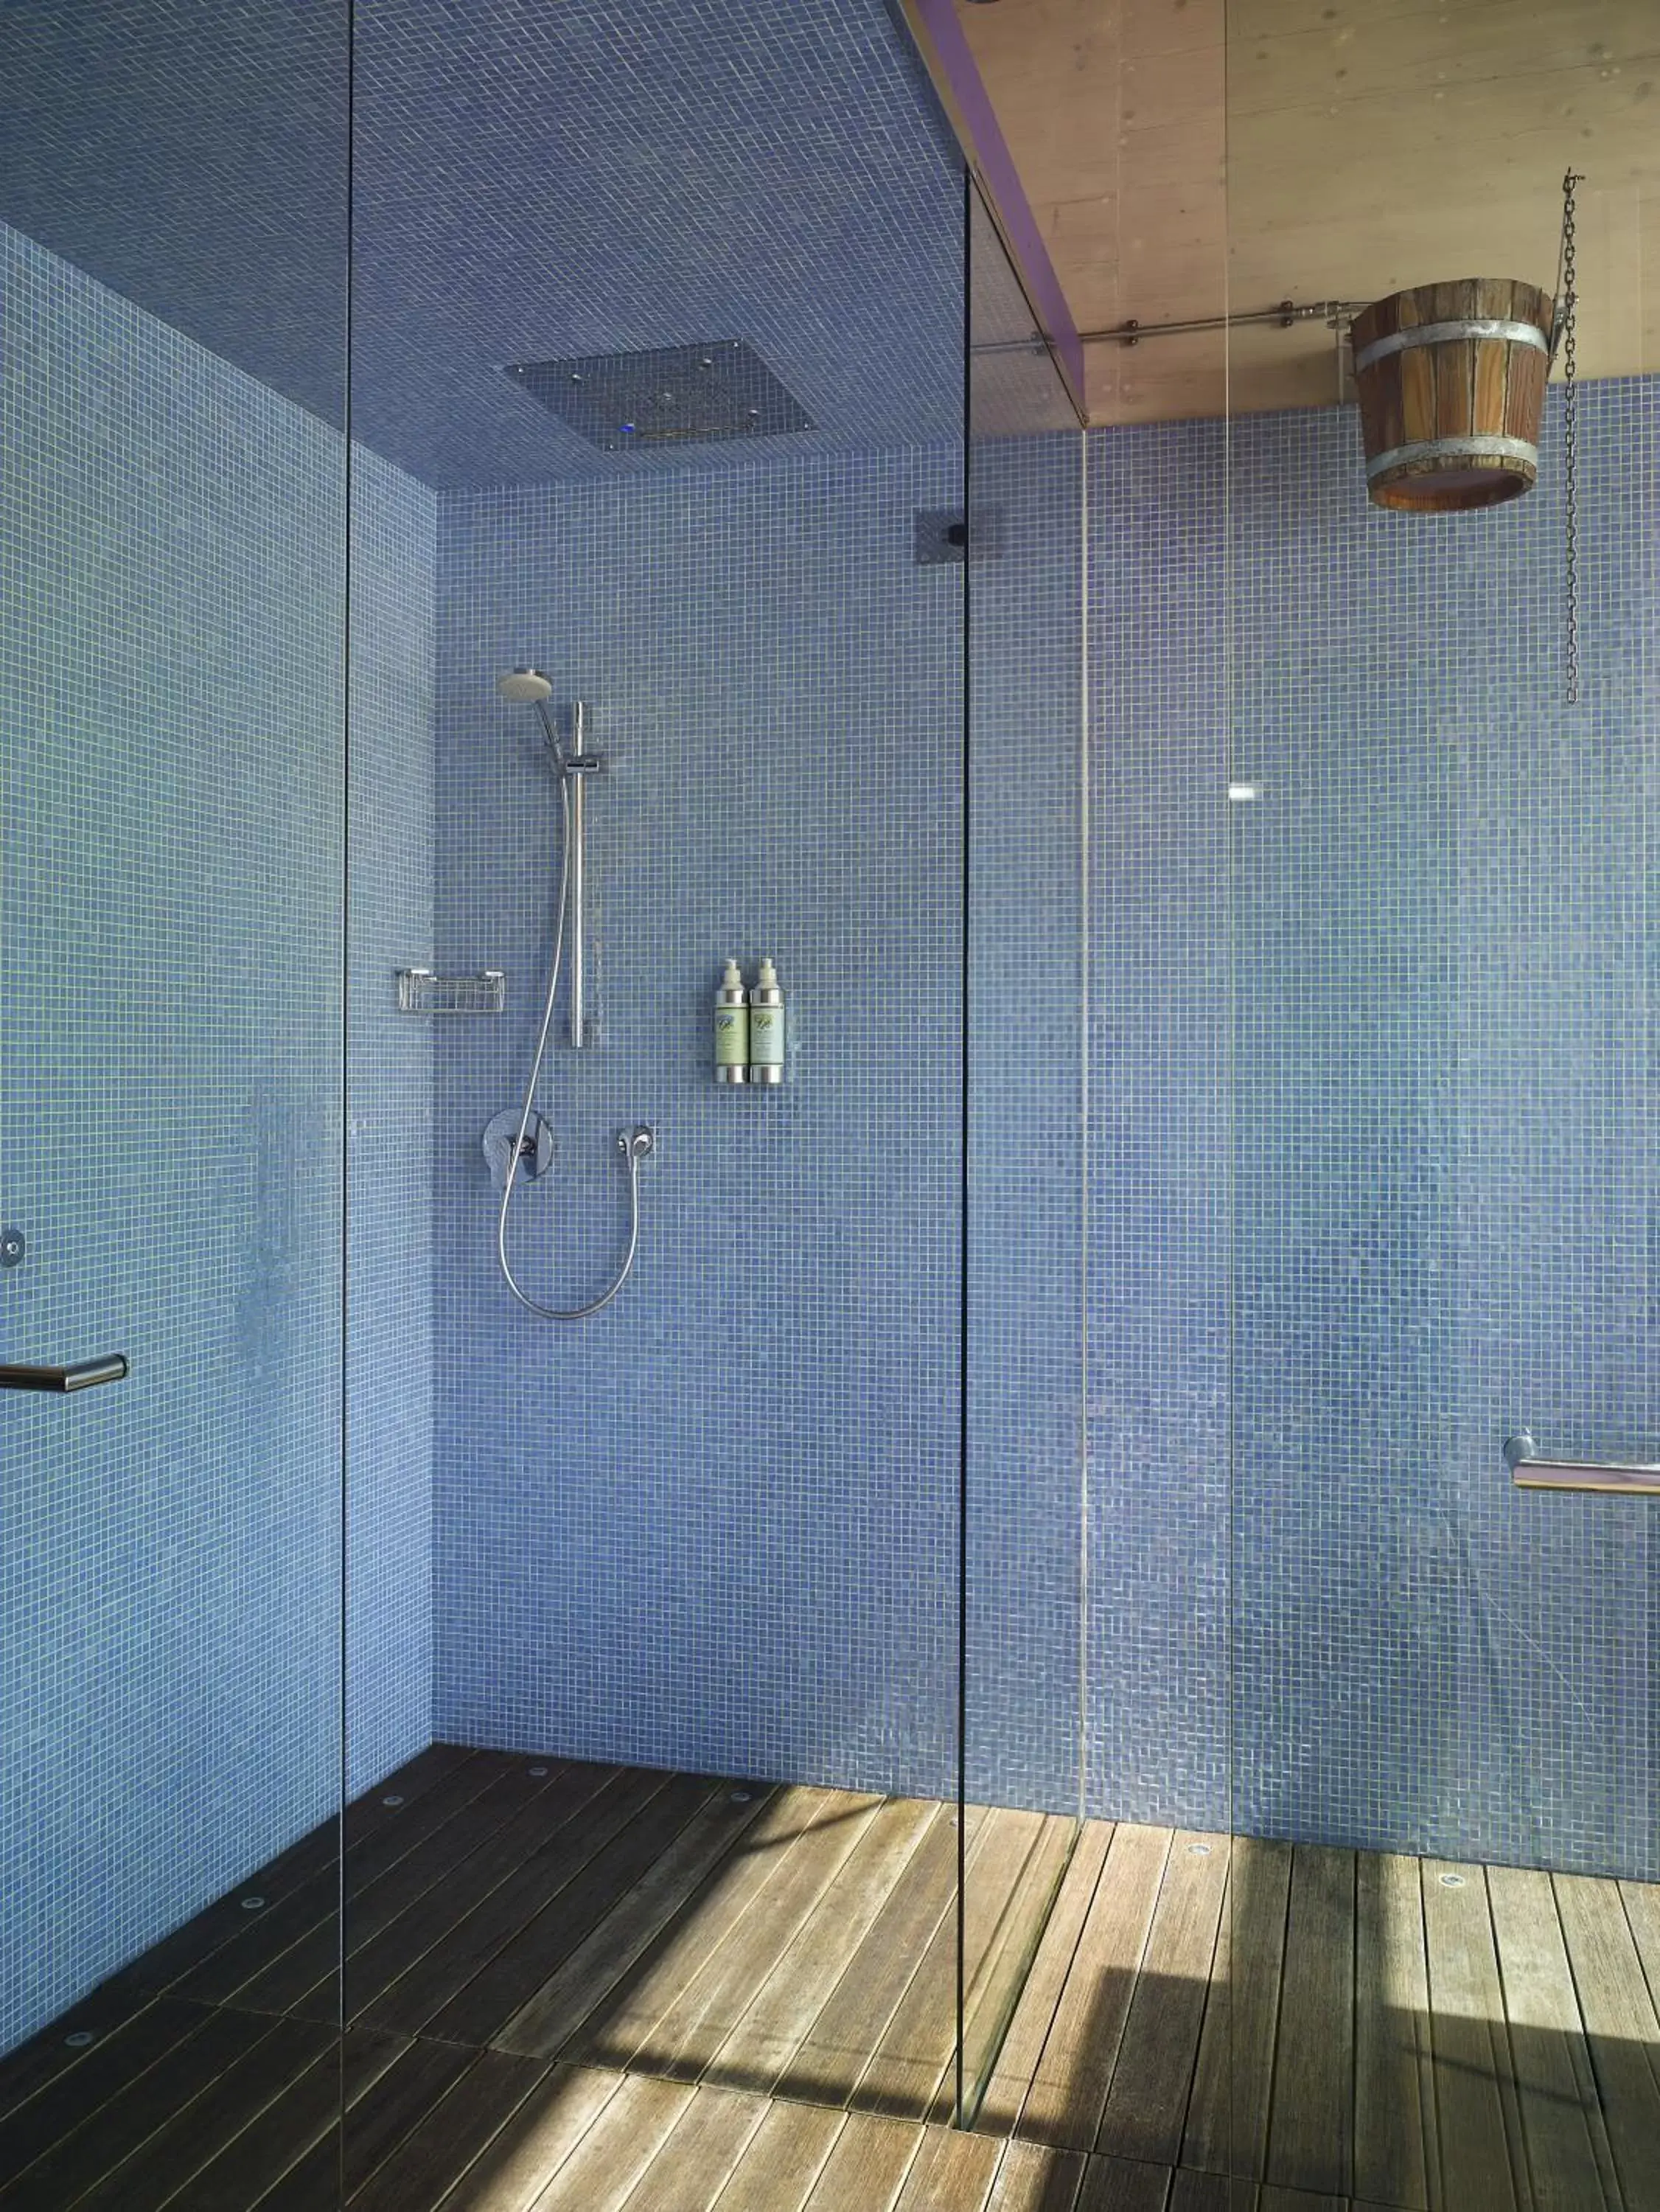 Spa and wellness centre/facilities, Bathroom in Villa Abbondanzi Resort